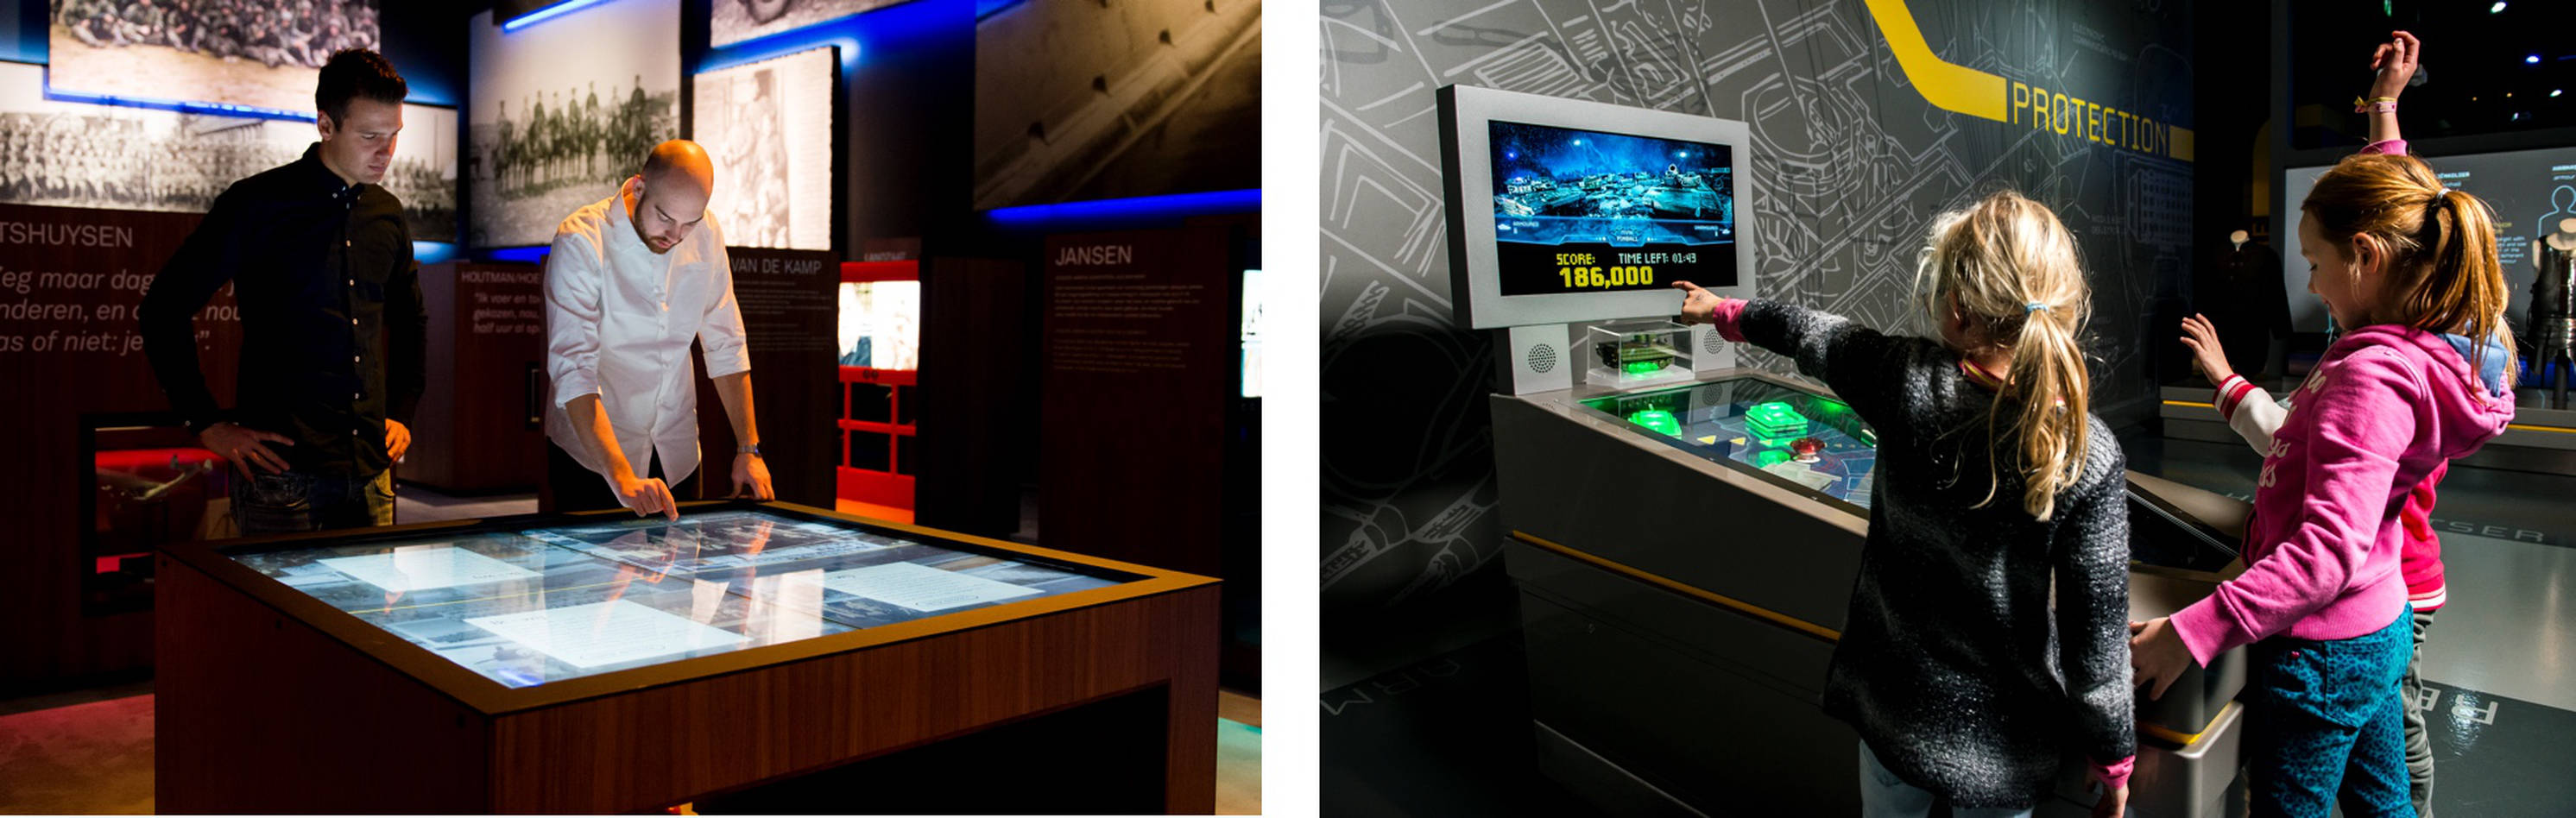 Interactives Nationaal Militair Museum door Fabrique